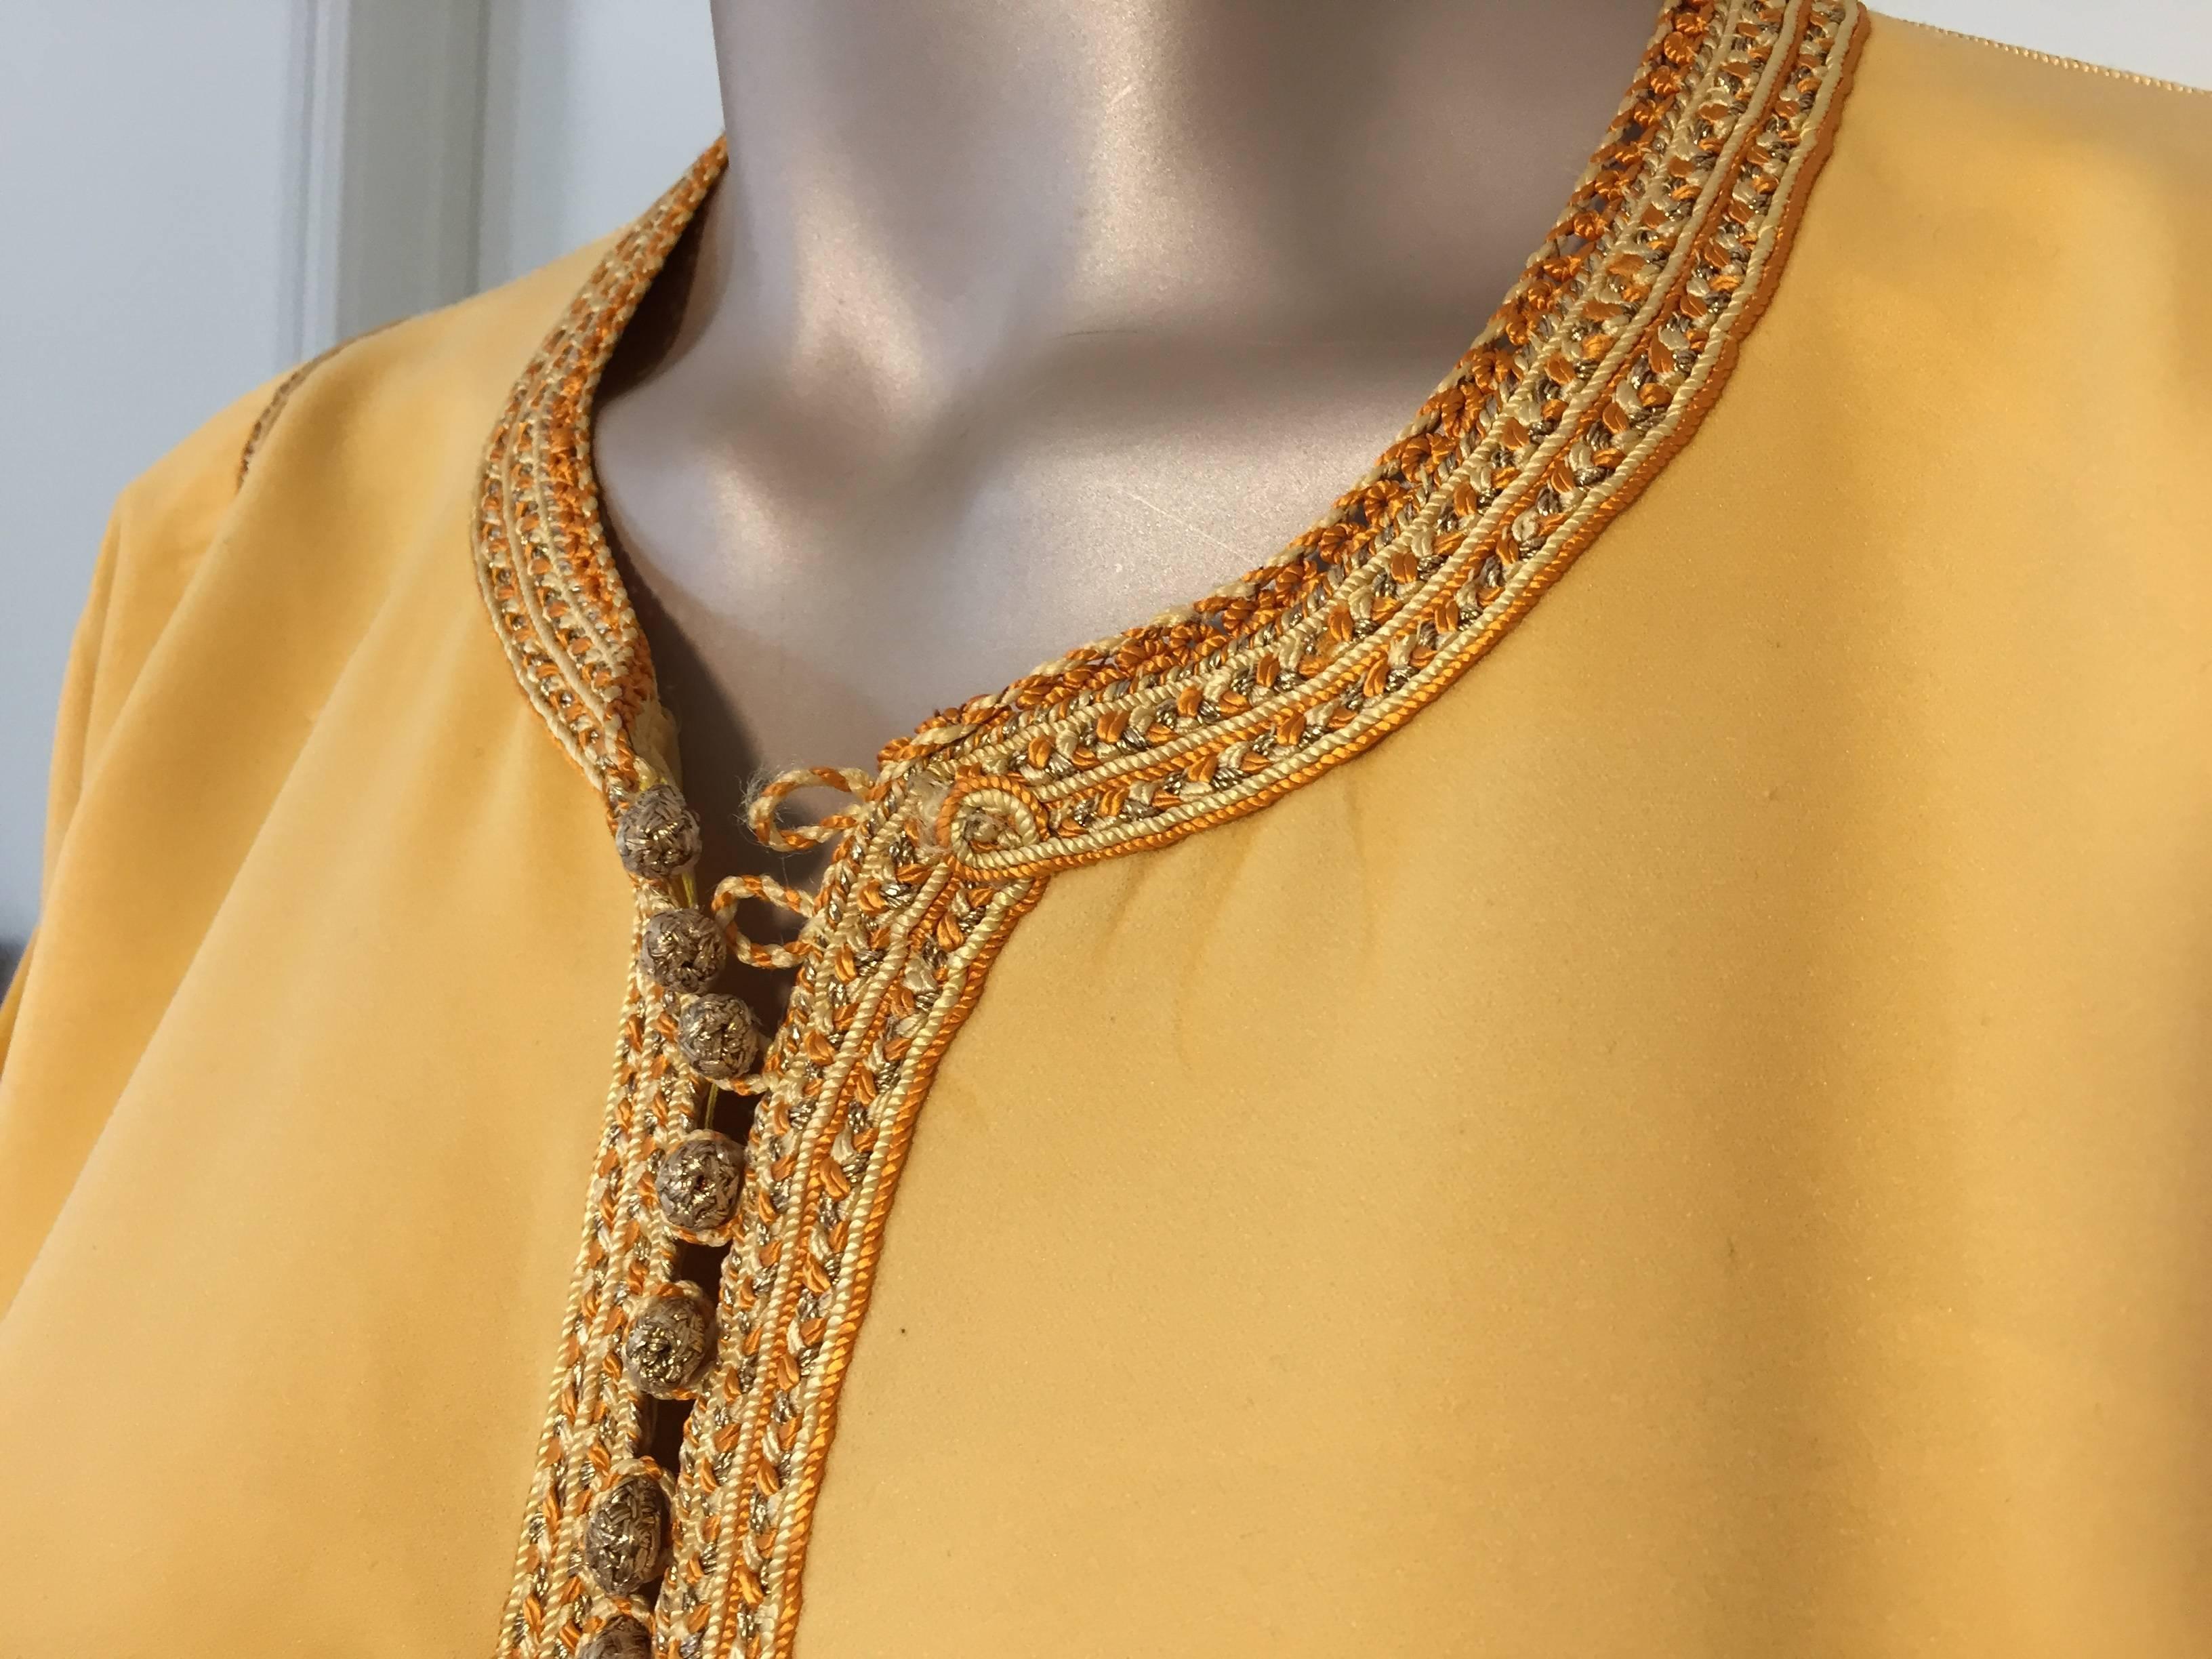 Marokkanischer Kaftan in Gelbgold, bestickt mit Goldbesatz,
etwa 1960er Jahre.
Dieser lange maurische Maxikleid-Kaftan ist mit traditionellen Mustern in Gold bestickt und verziert.
Einzigartiges, speziell angefertigtes marokkanisches Abendkleid aus